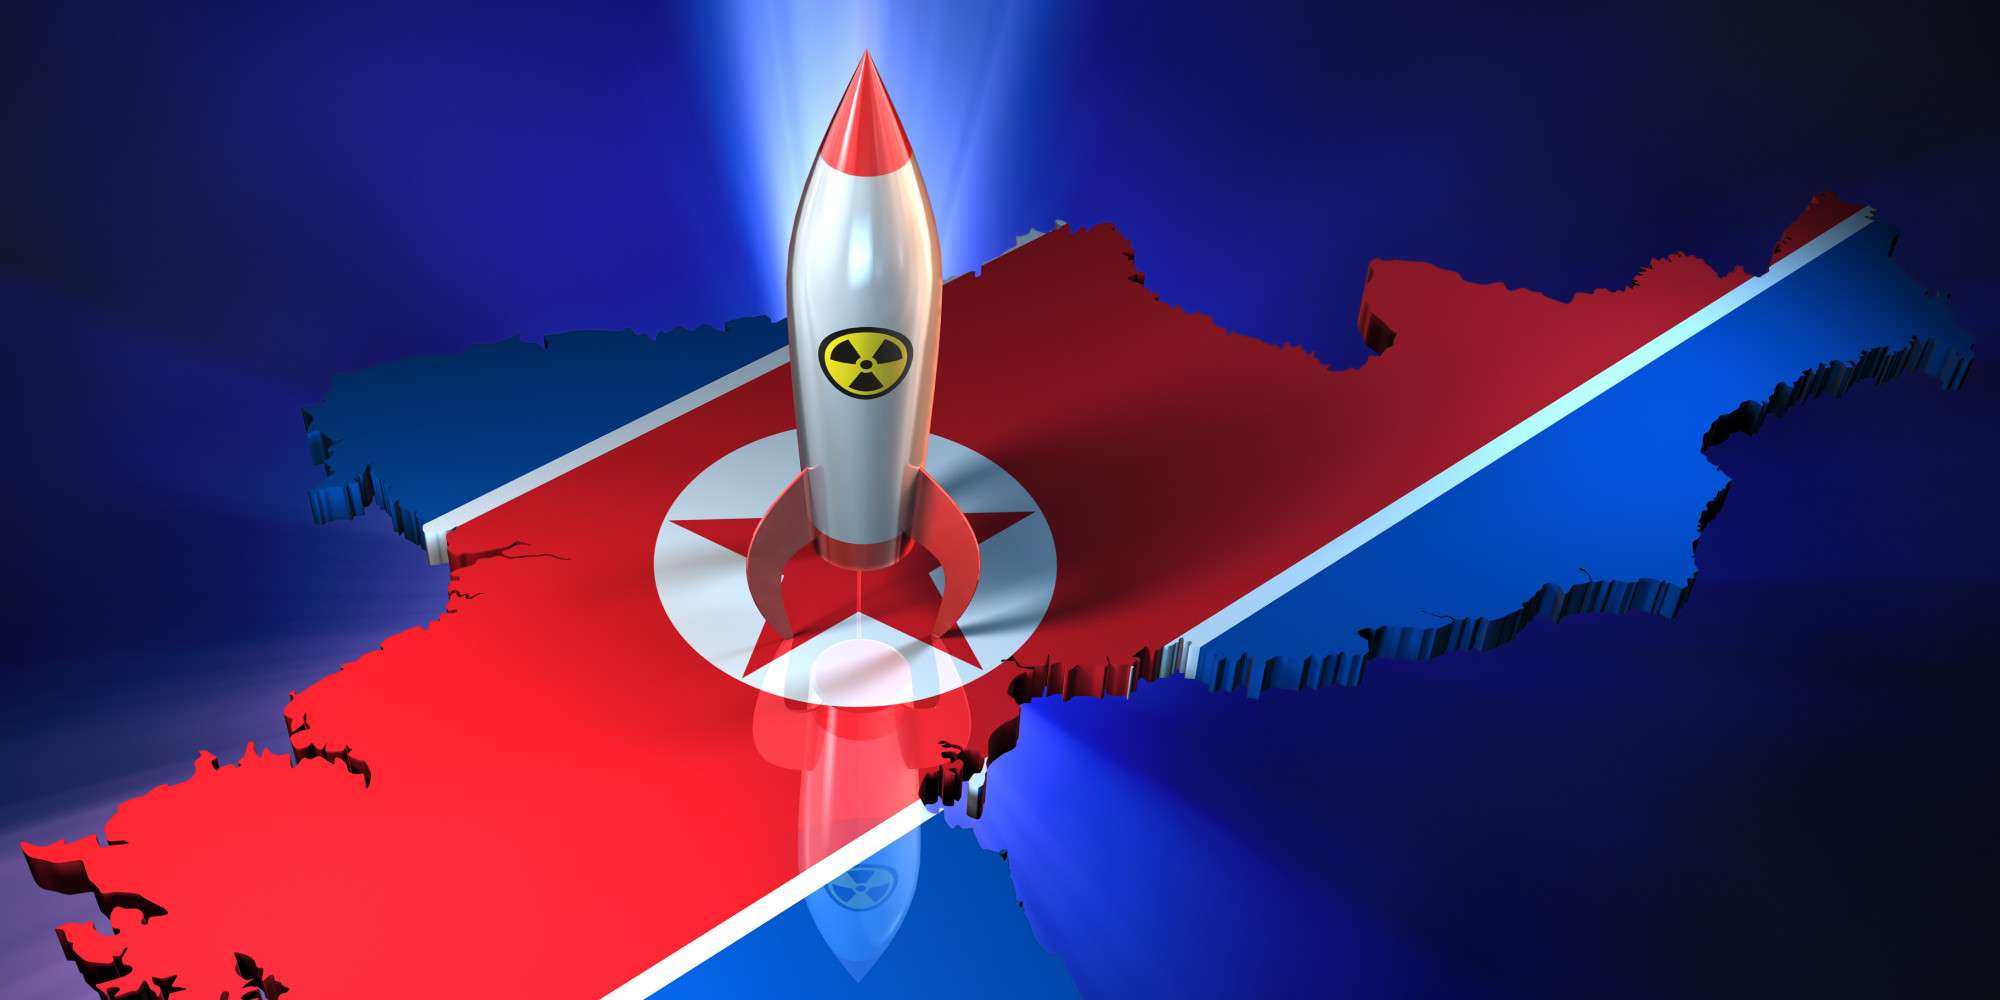 Δοκιμή κινητήρα για διηπειρωτικό πύραυλο έκανε η Βόρεια Κορέα